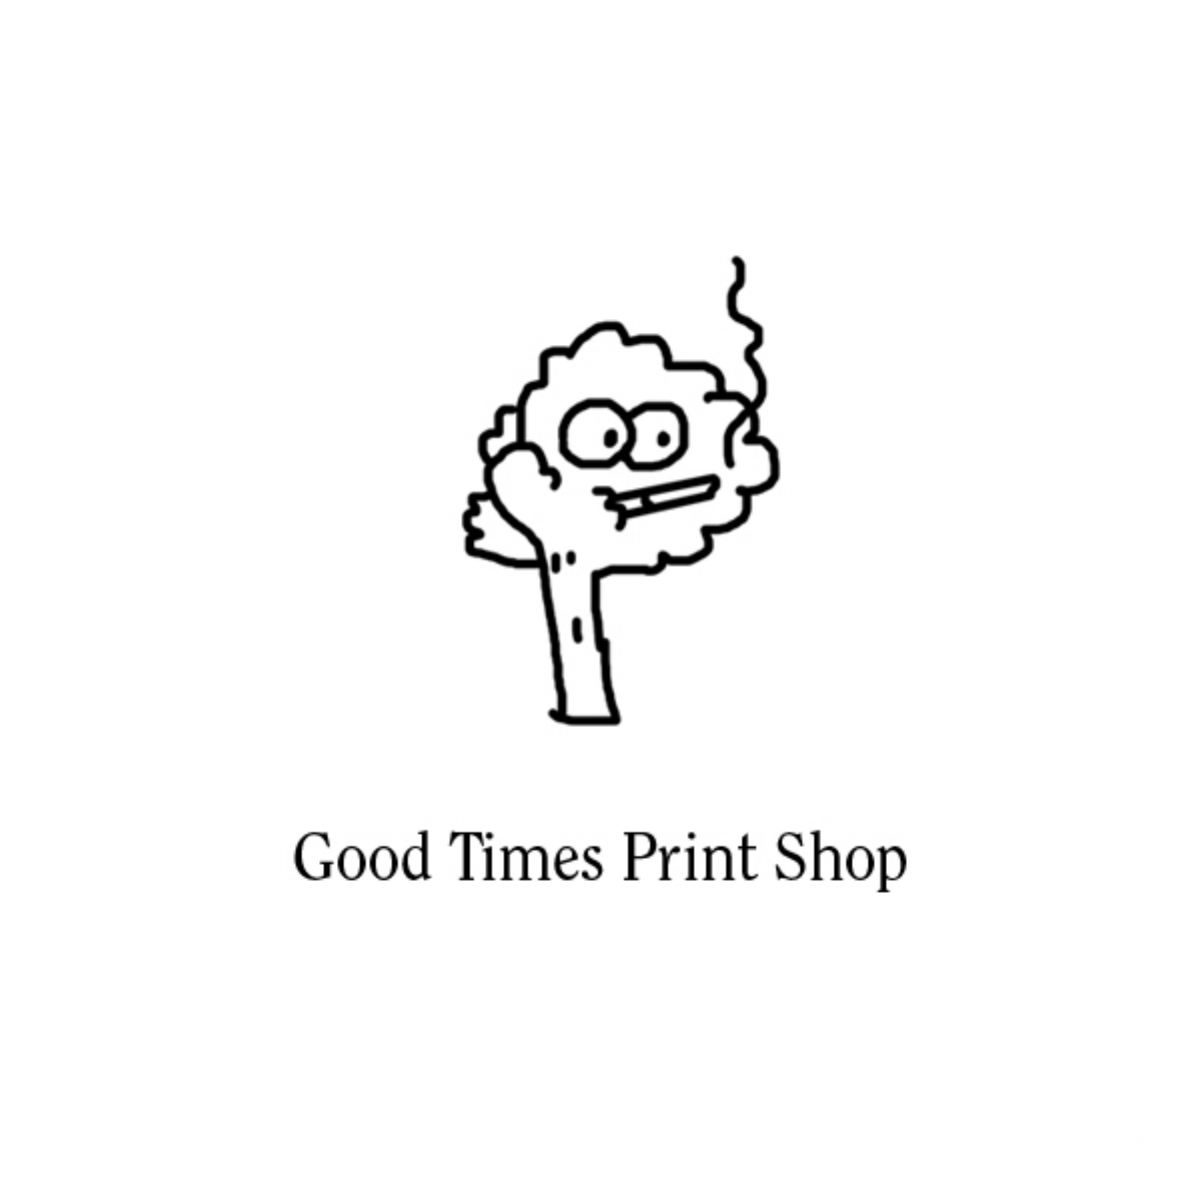 Good Times Print Shop